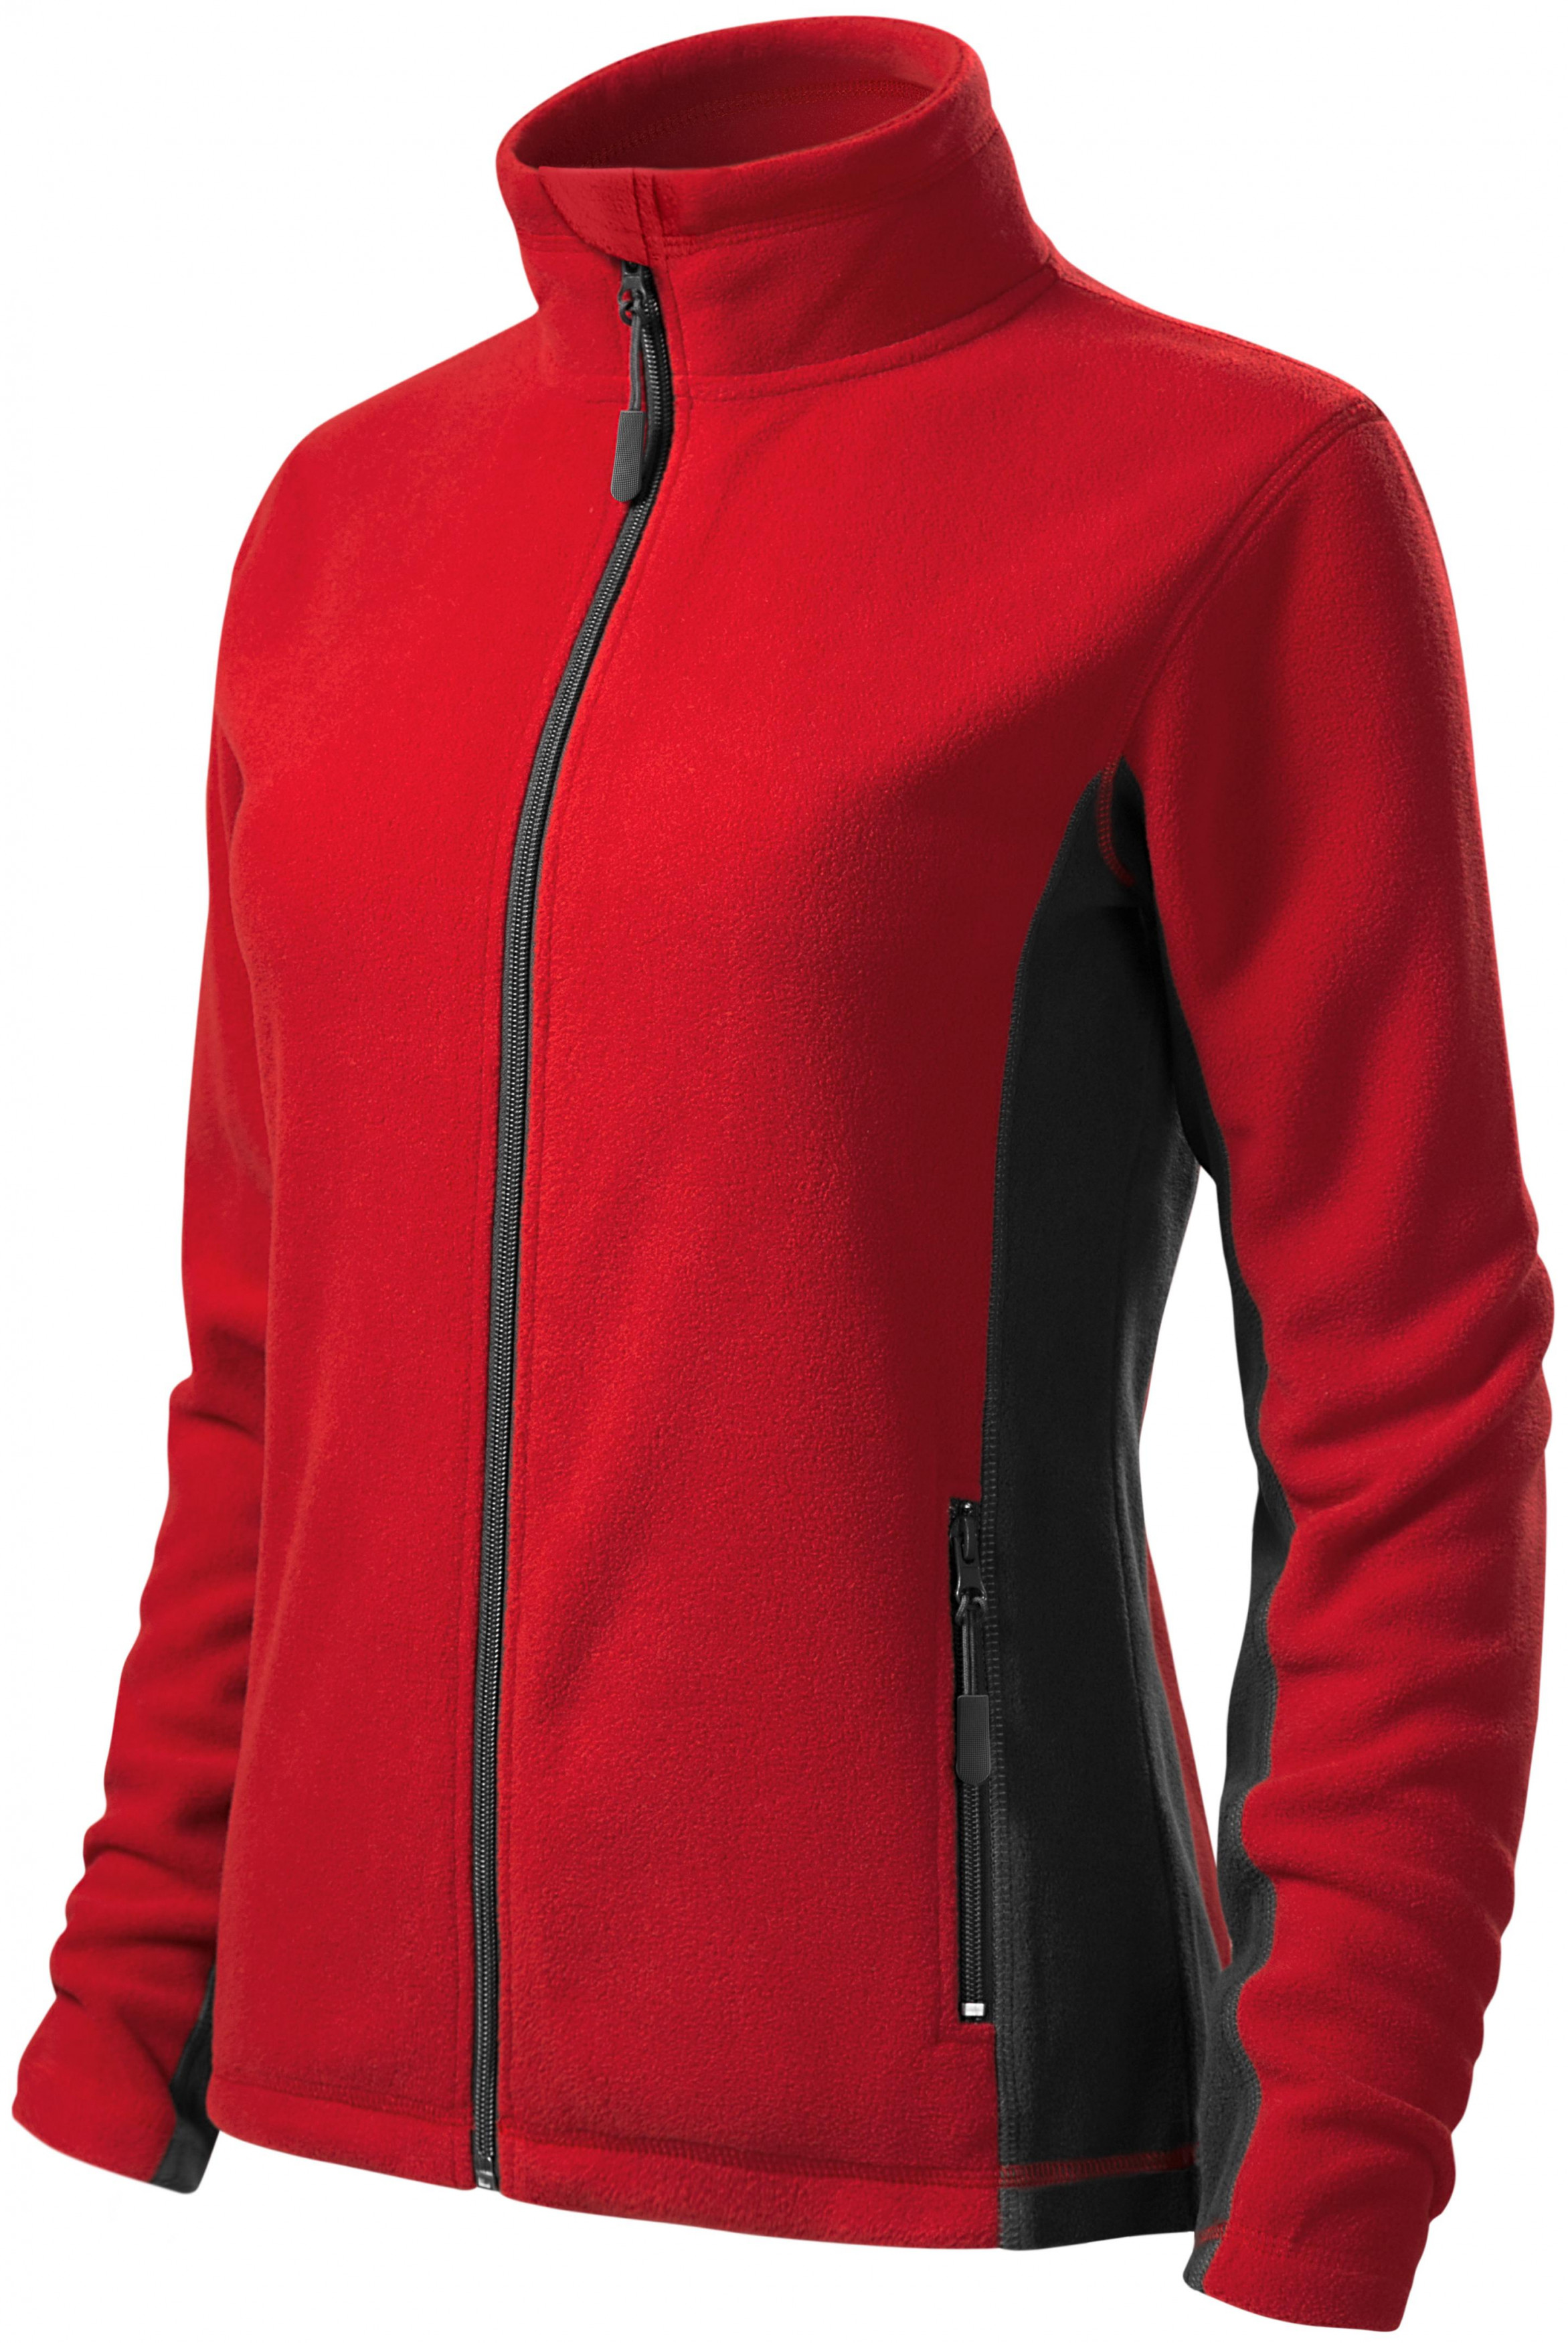 Dámska fleecová bunda kontrastná, červená, XS